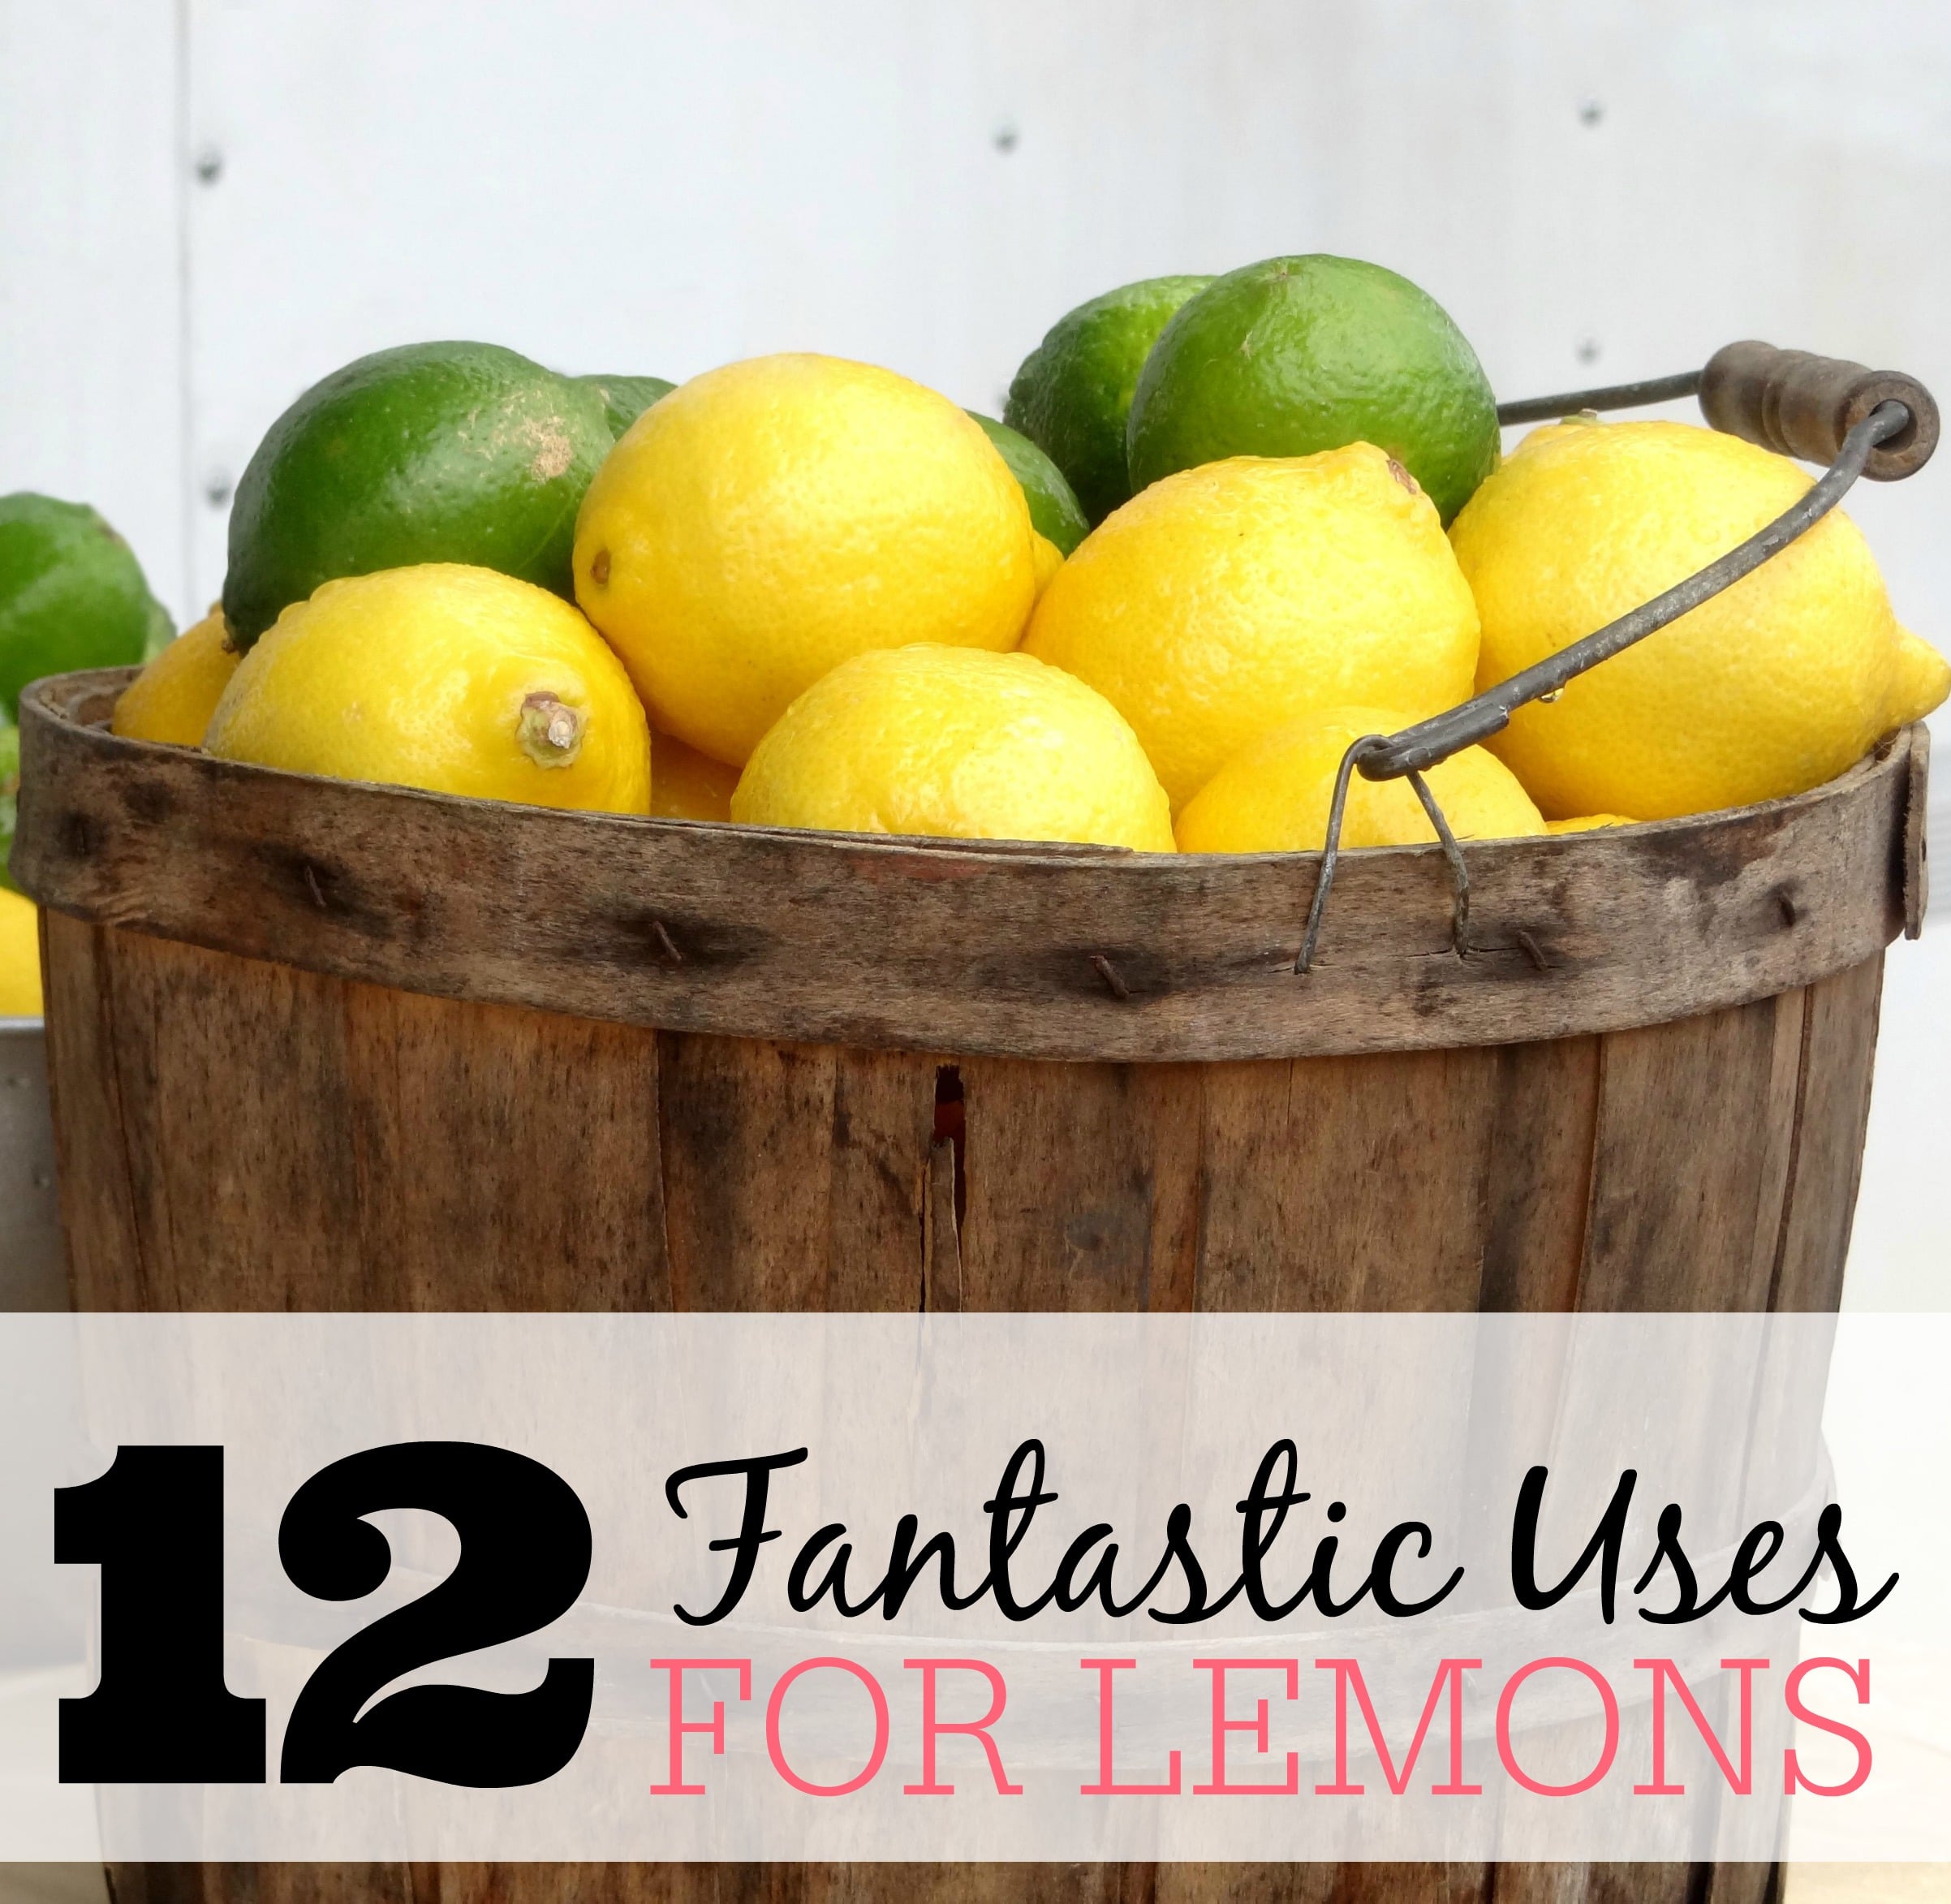 12 fantastic uses for lemons